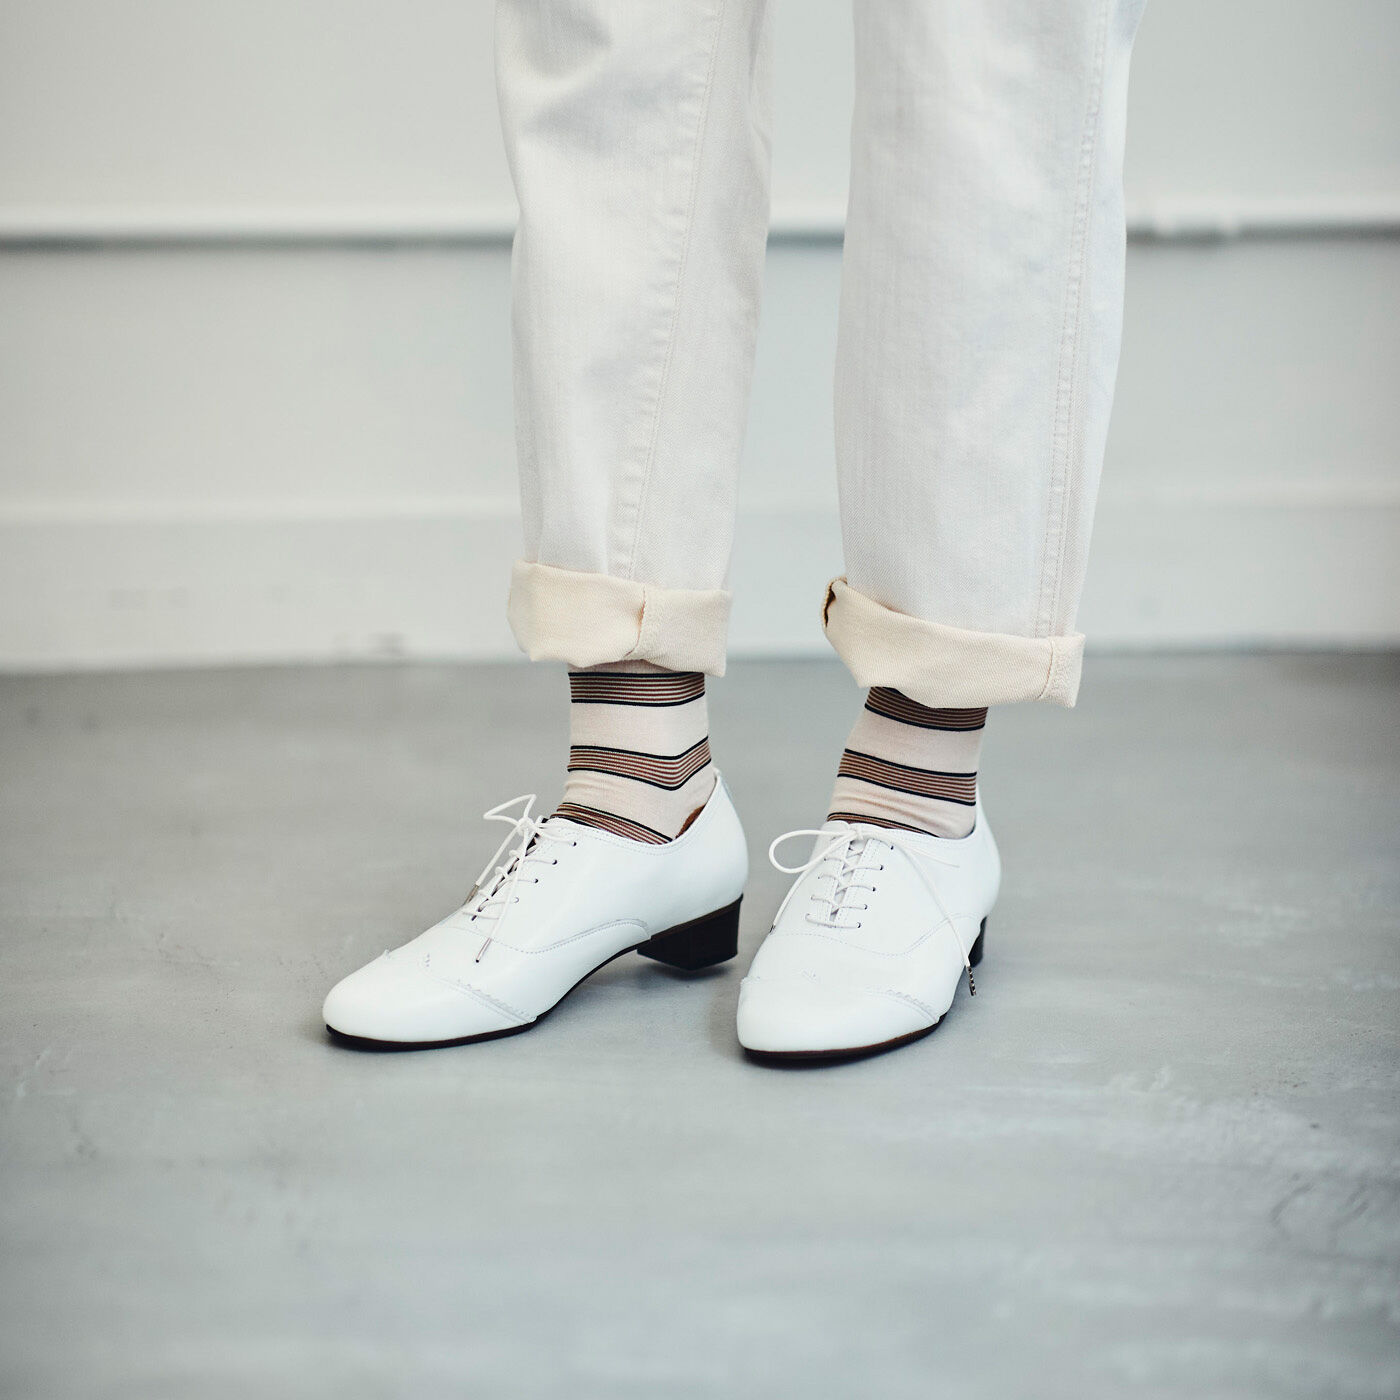 ＆Stories|長田の靴メーカーと作った 職人本革のレースアップシューズ〈ホワイト〉|靴下とのコーデも楽しめて、合わせる靴下の色柄で雰囲気も変わります。